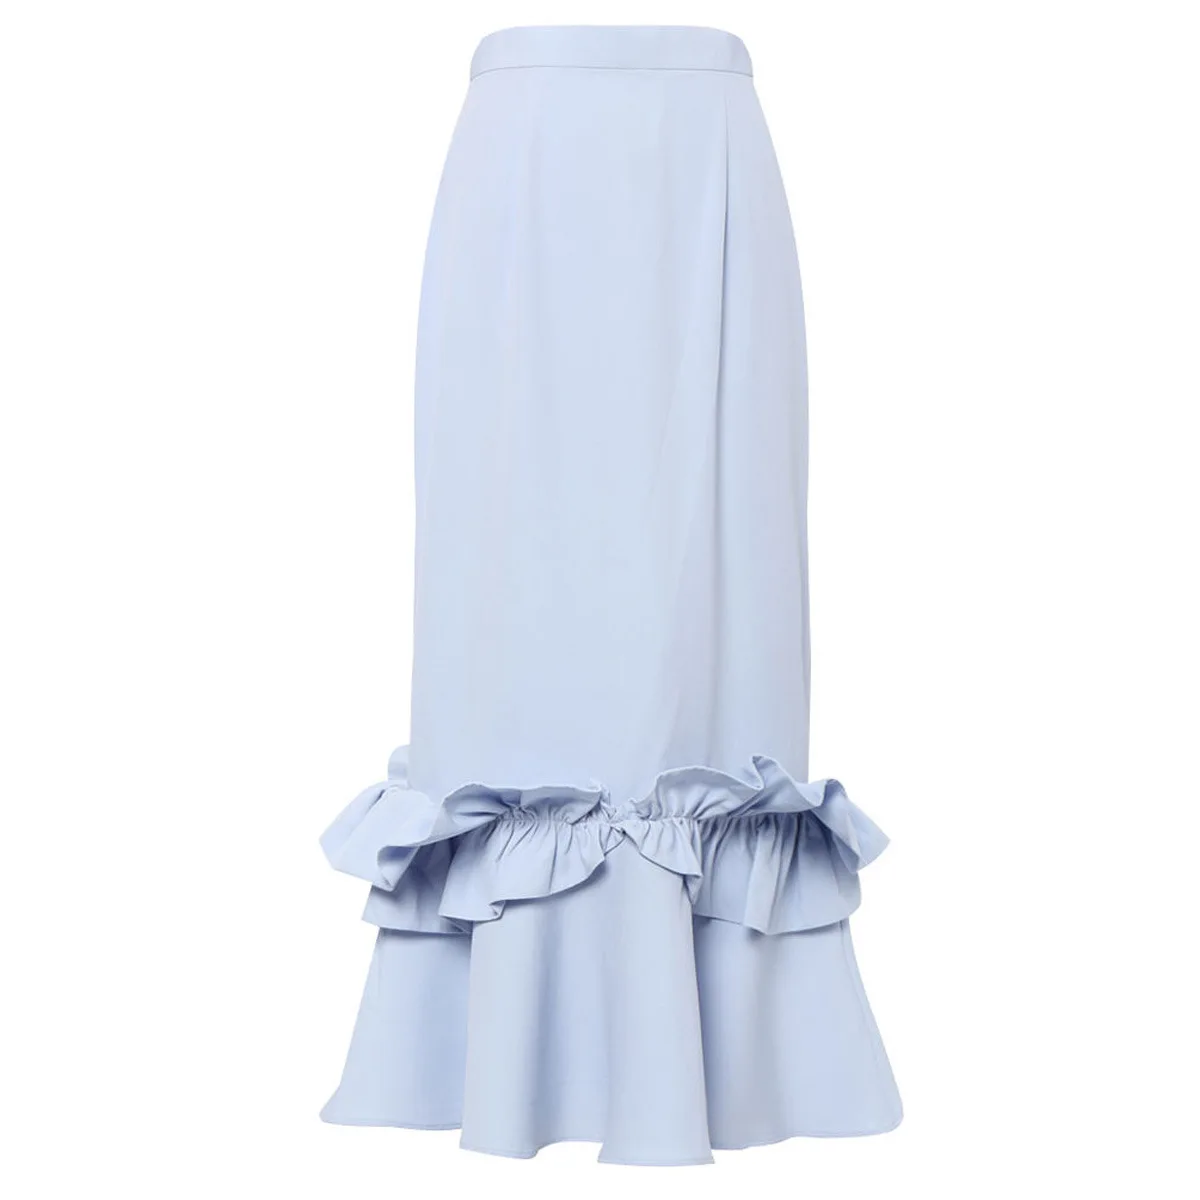 Blue Lotus Hip Pack Fishtail Skirt Long Length Empire Waist Large Size Casual Joker Women's Skirts Folds